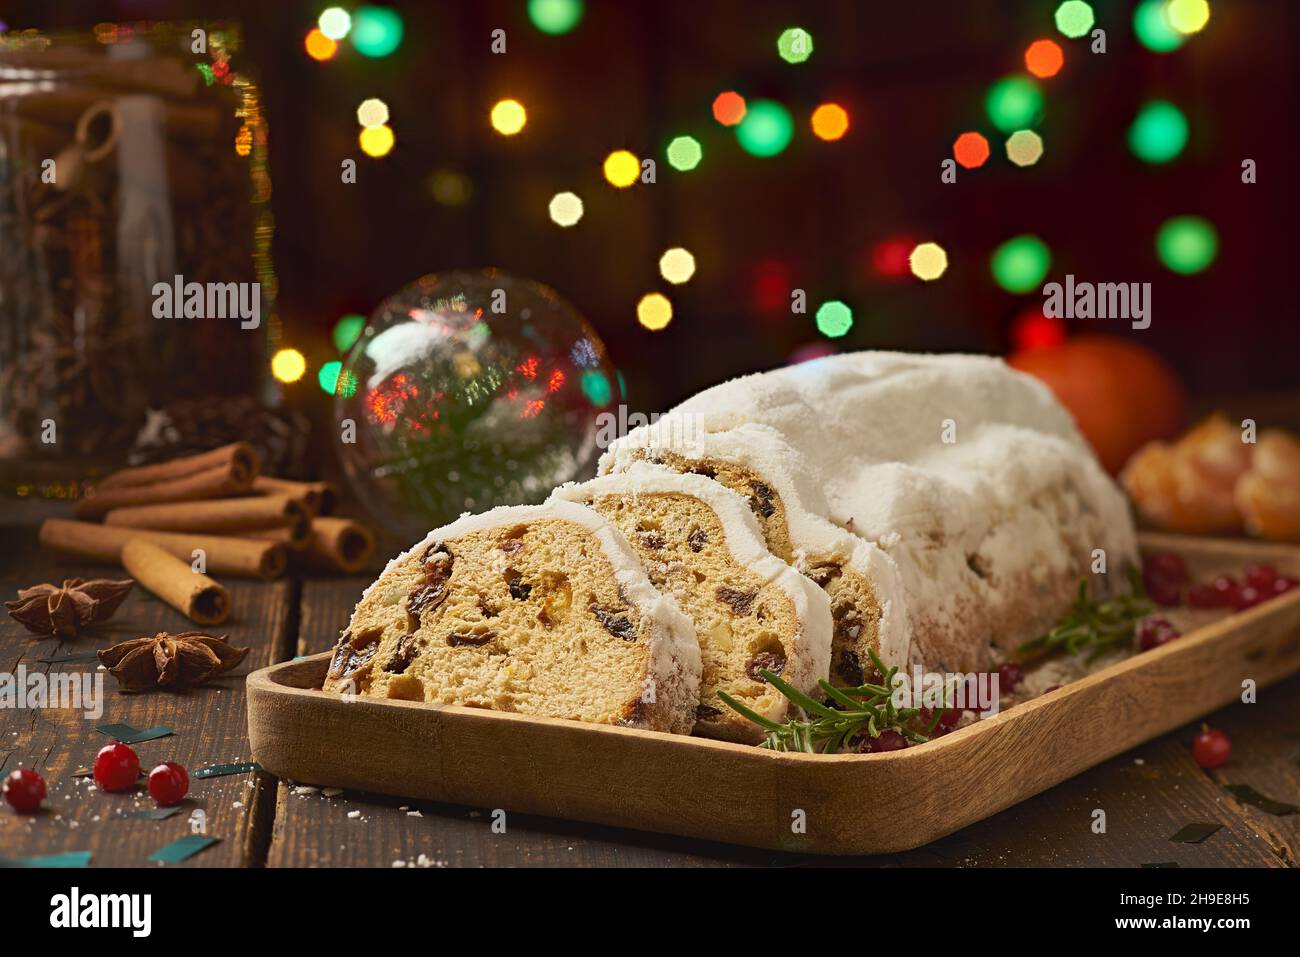 Dolce natalizio tradizionale con spezie e decorazioni natalizie Foto Stock